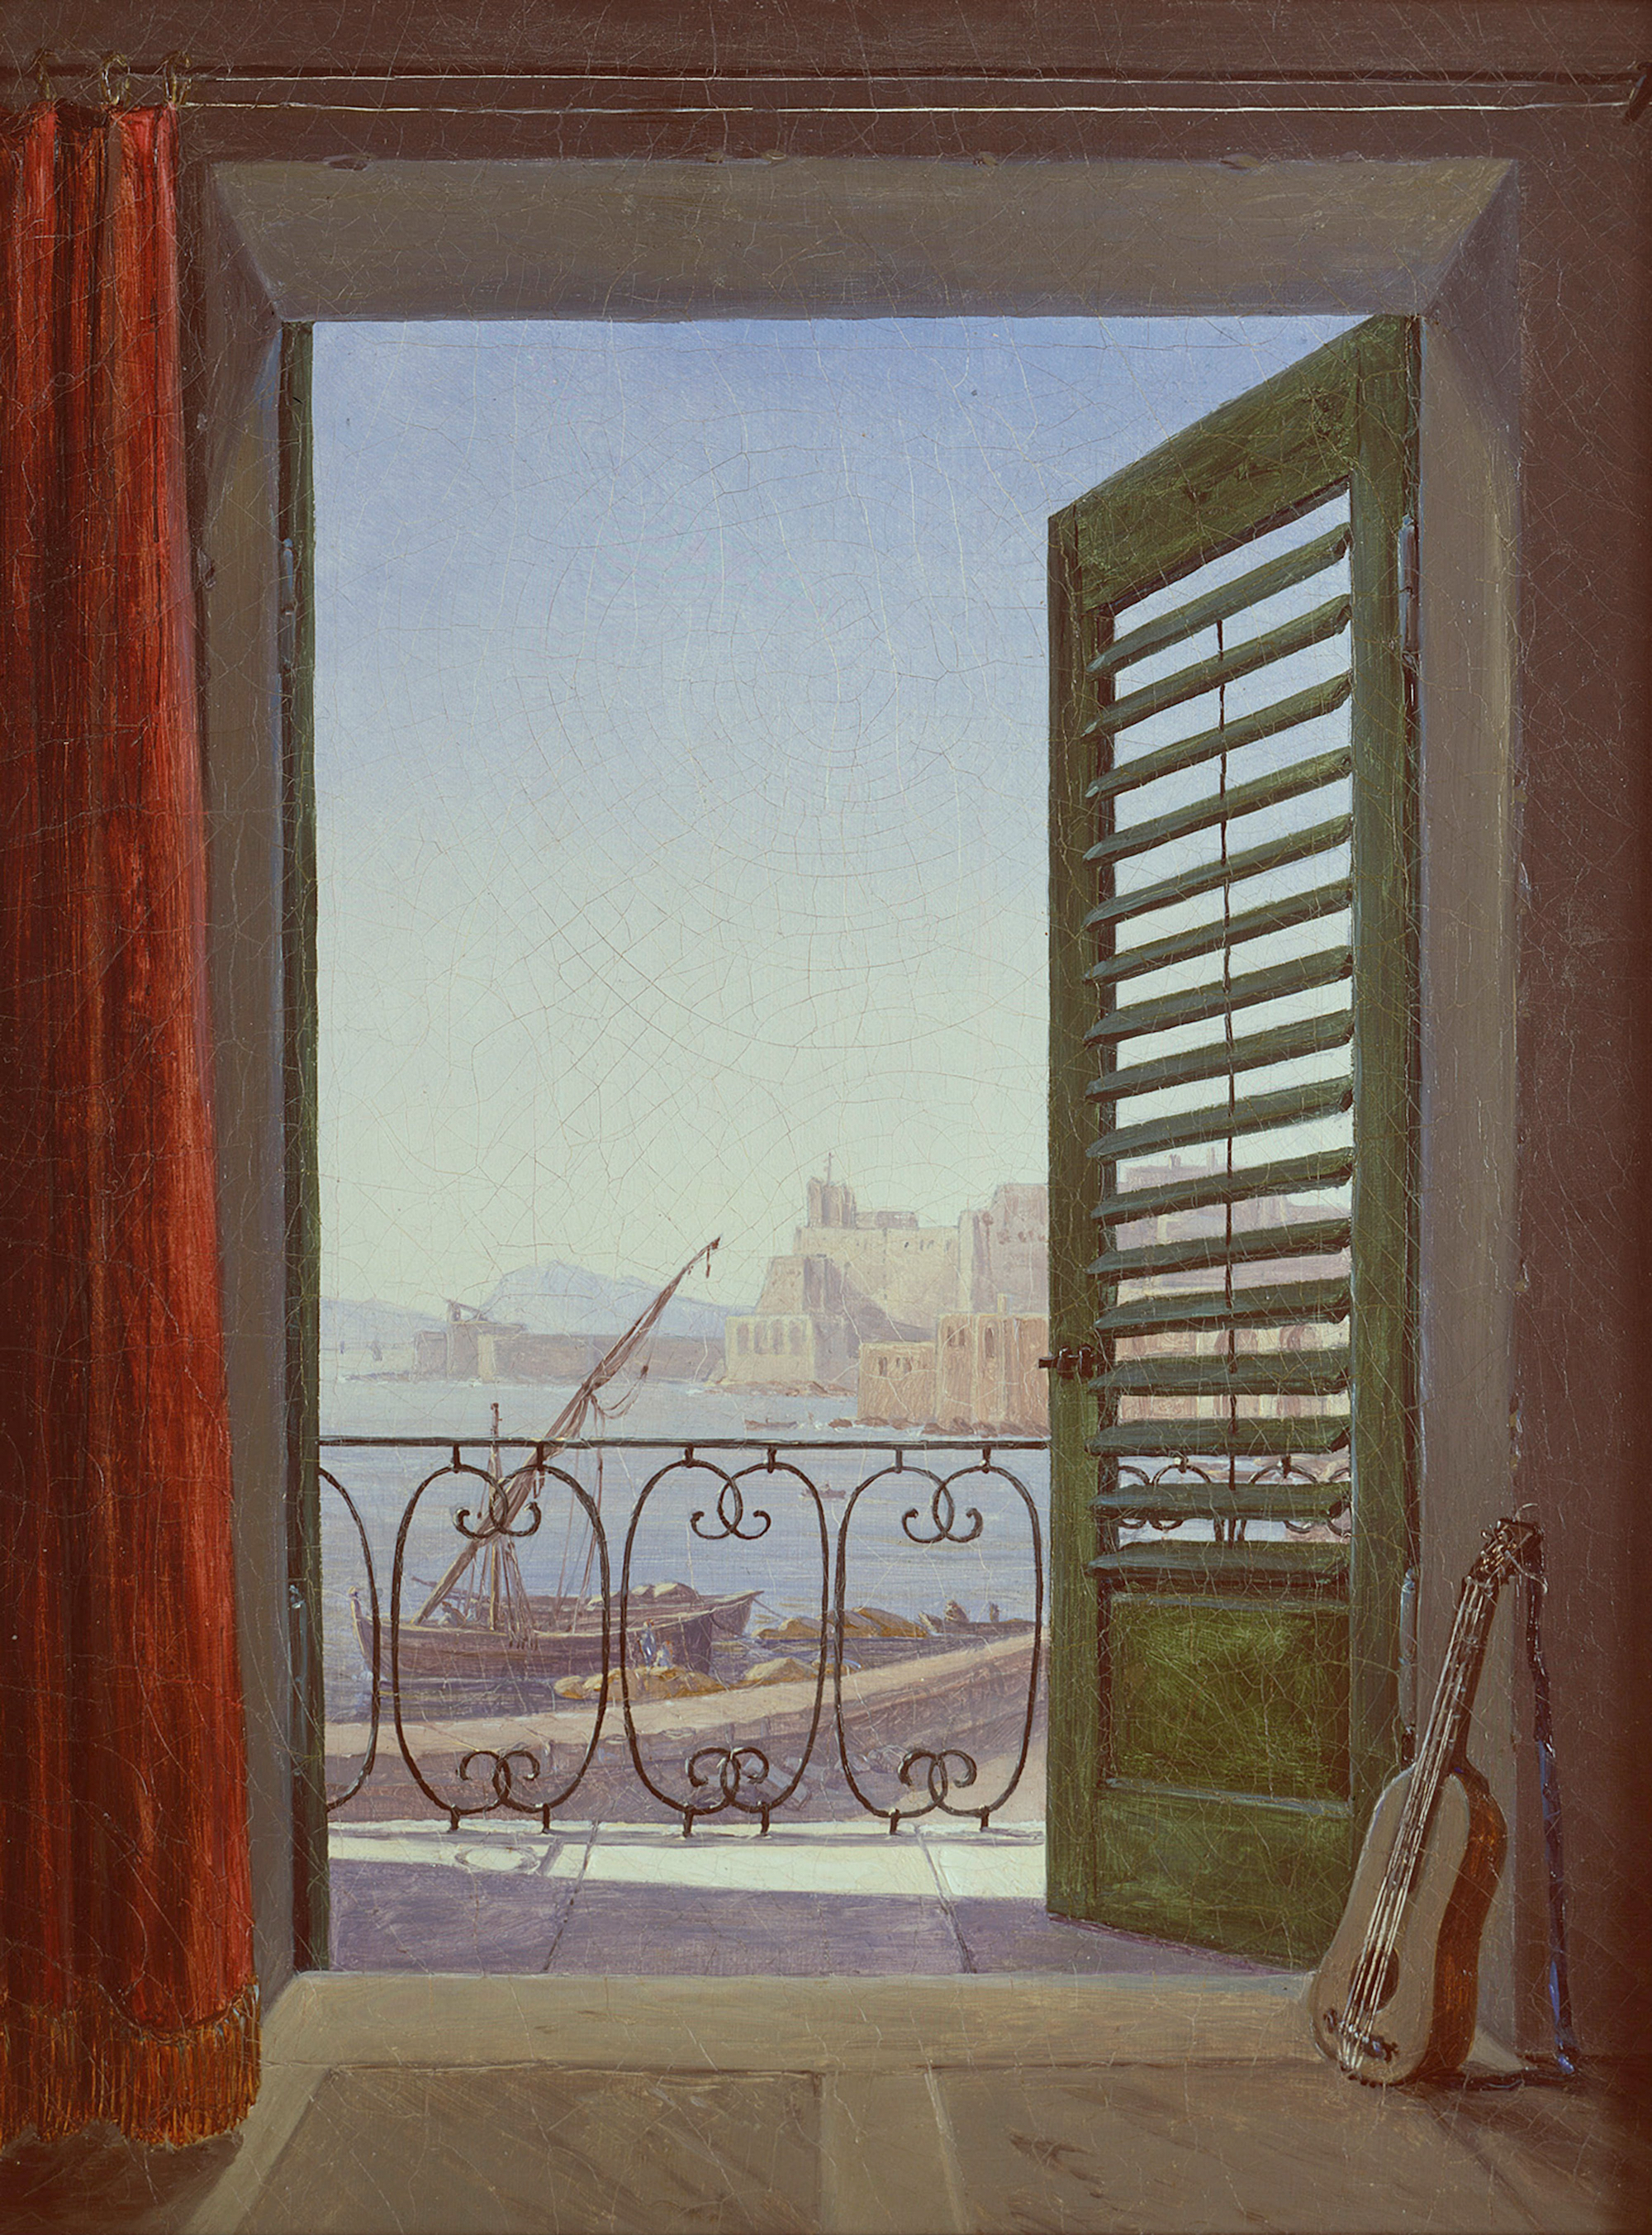 那不勒斯湾风光 by 卡尔 古斯塔夫· 卡鲁斯 - 大约在1829/1830 旧国家美术馆